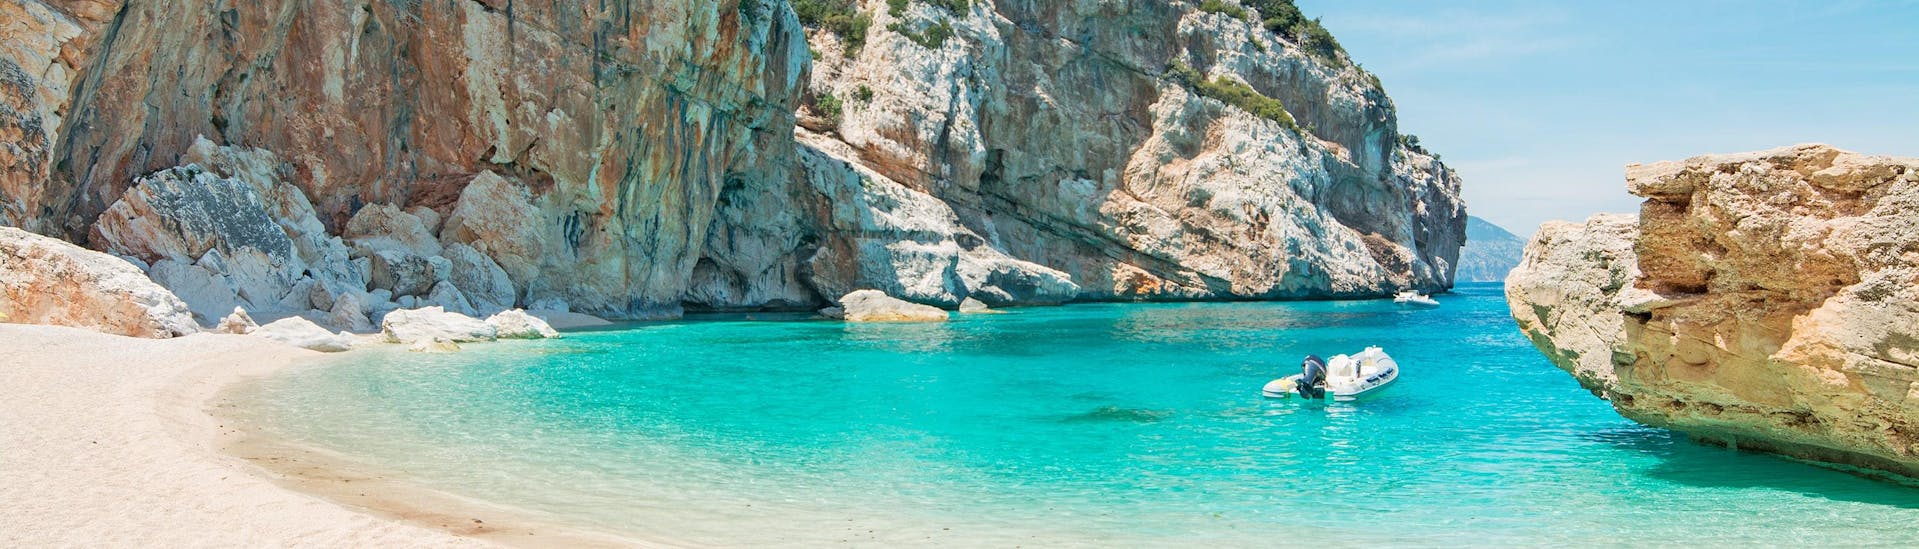 Una bellissima spiaggia lungo la costa della Sardegna che si può visitare durante un giro in barca.